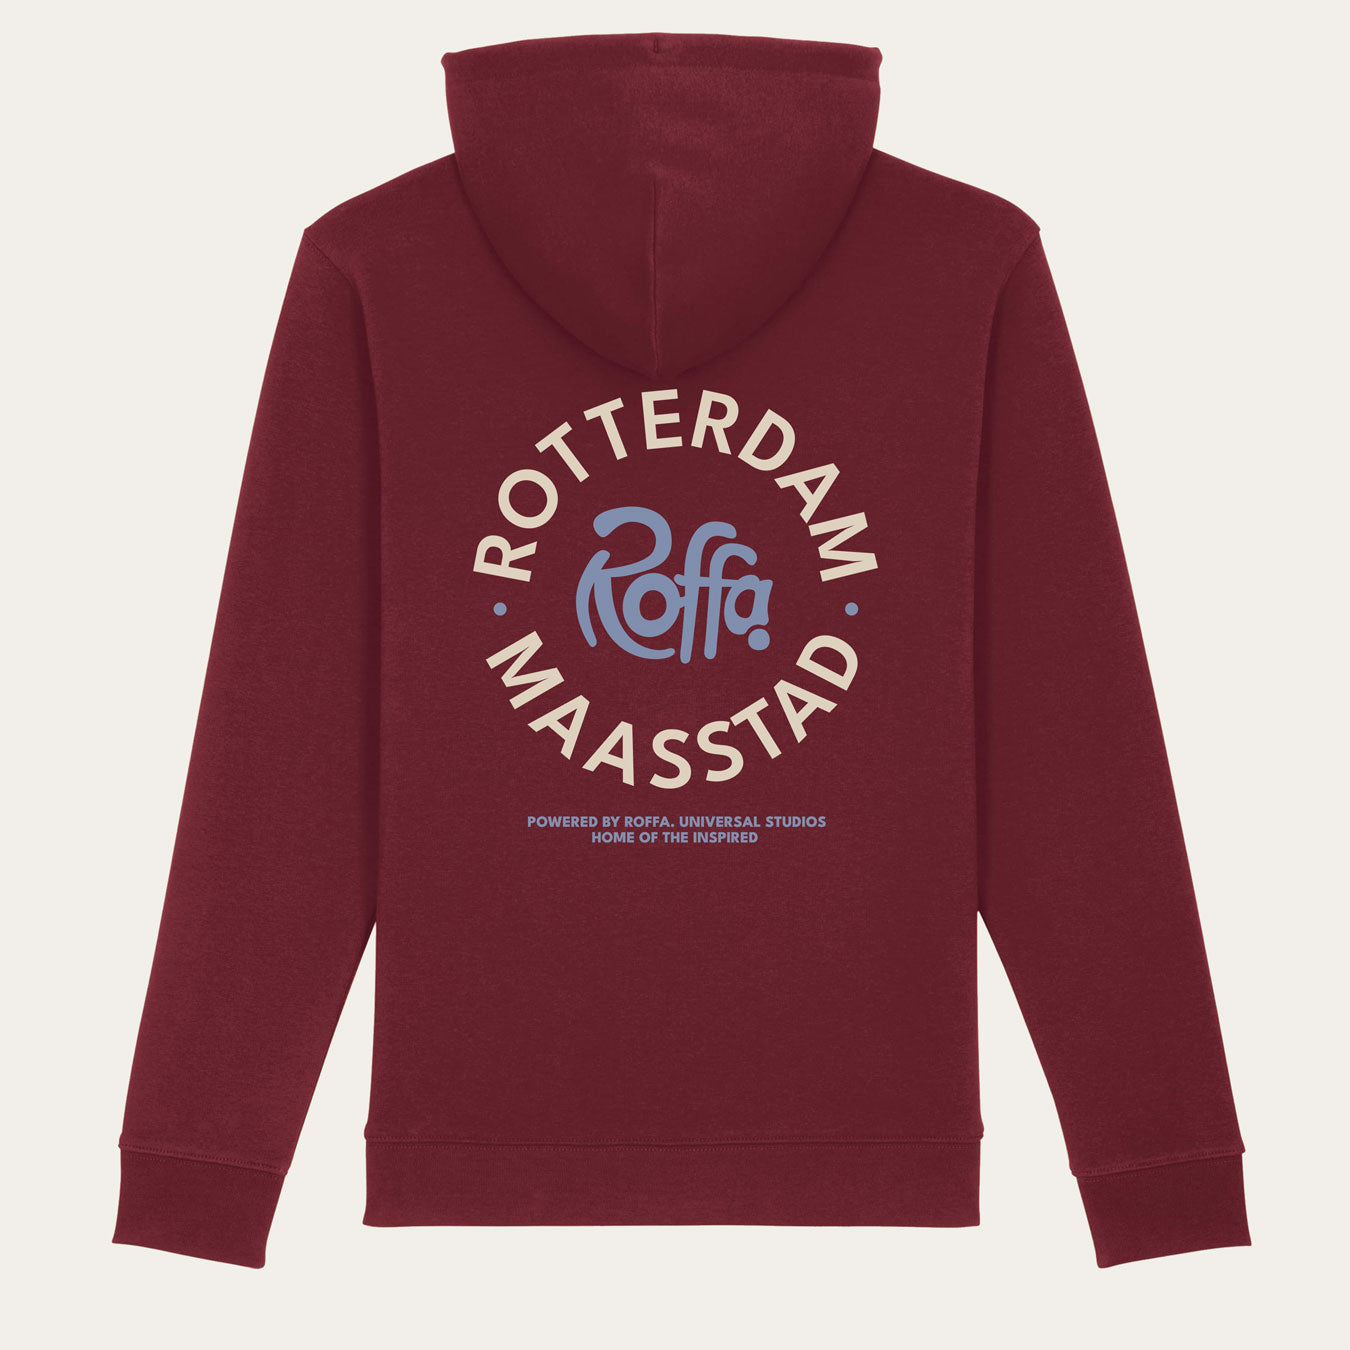 Rode hoodie met een rond Roffa en rotterdam logo